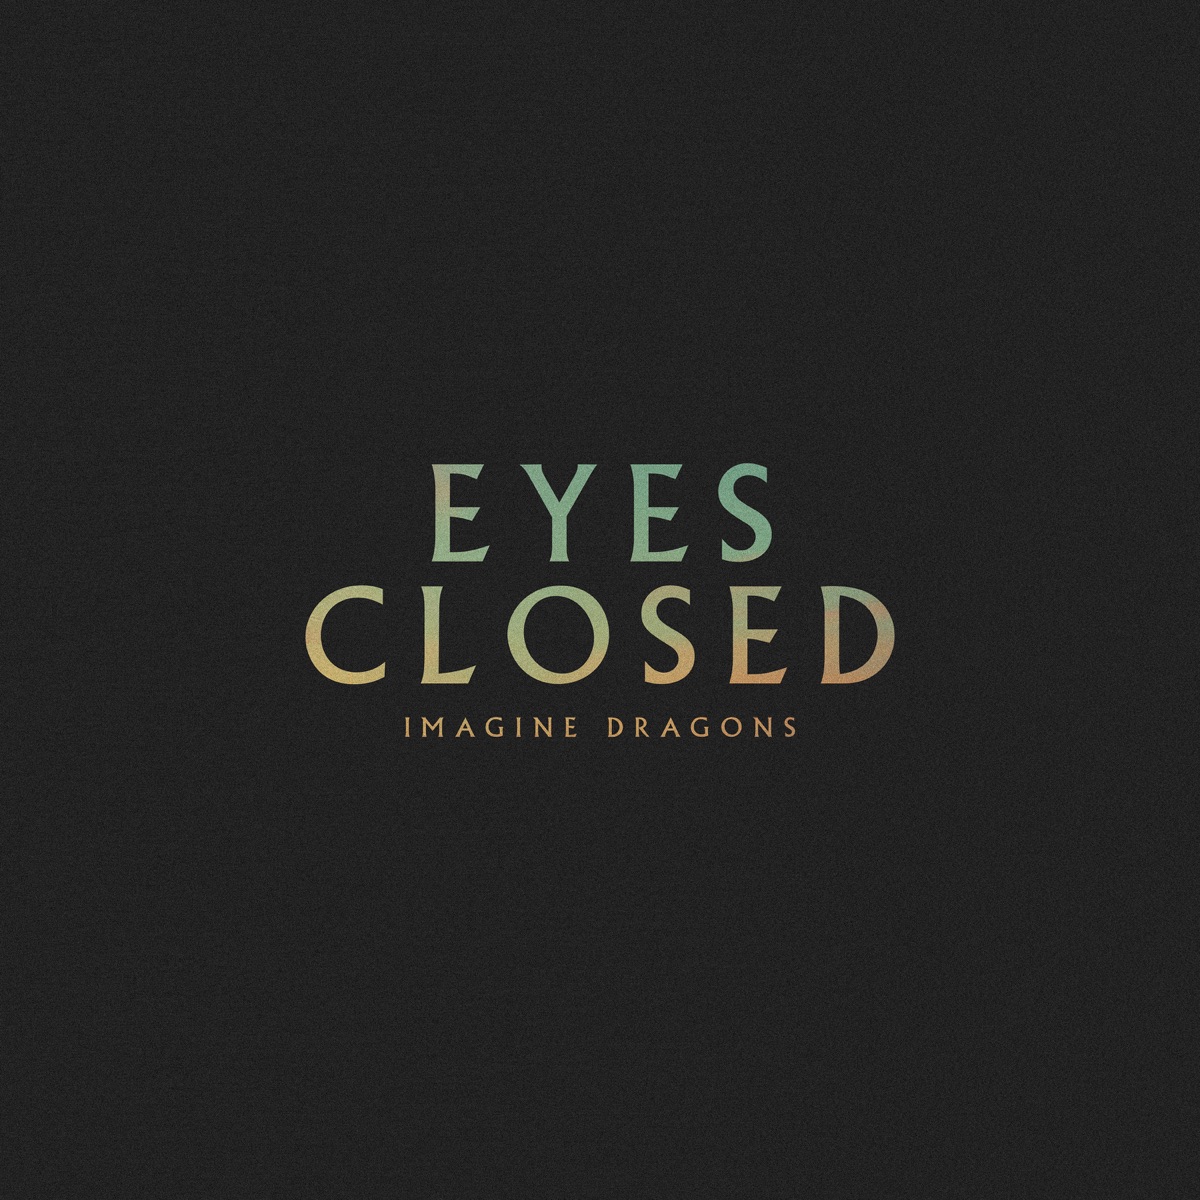 Imagine Dragons - Eyes Closed - Testo Traduzione Significato